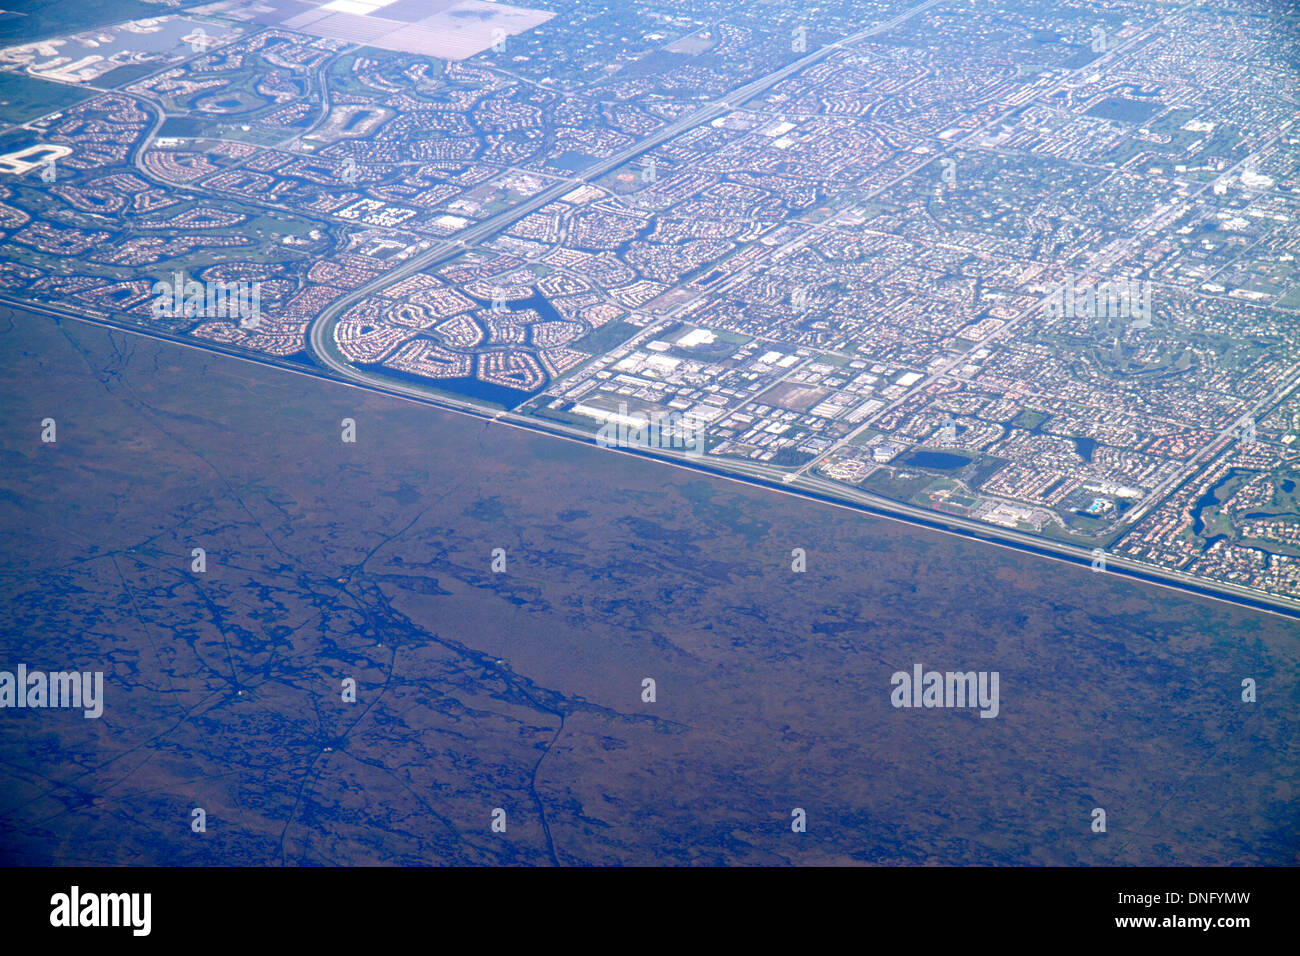 Miami Florida,FL,South,Miami Dade County,Miami International Airport,MIA,US Airways flight,window seat,aerial view,Everglades,developed land,Coral Spr Stock Photo